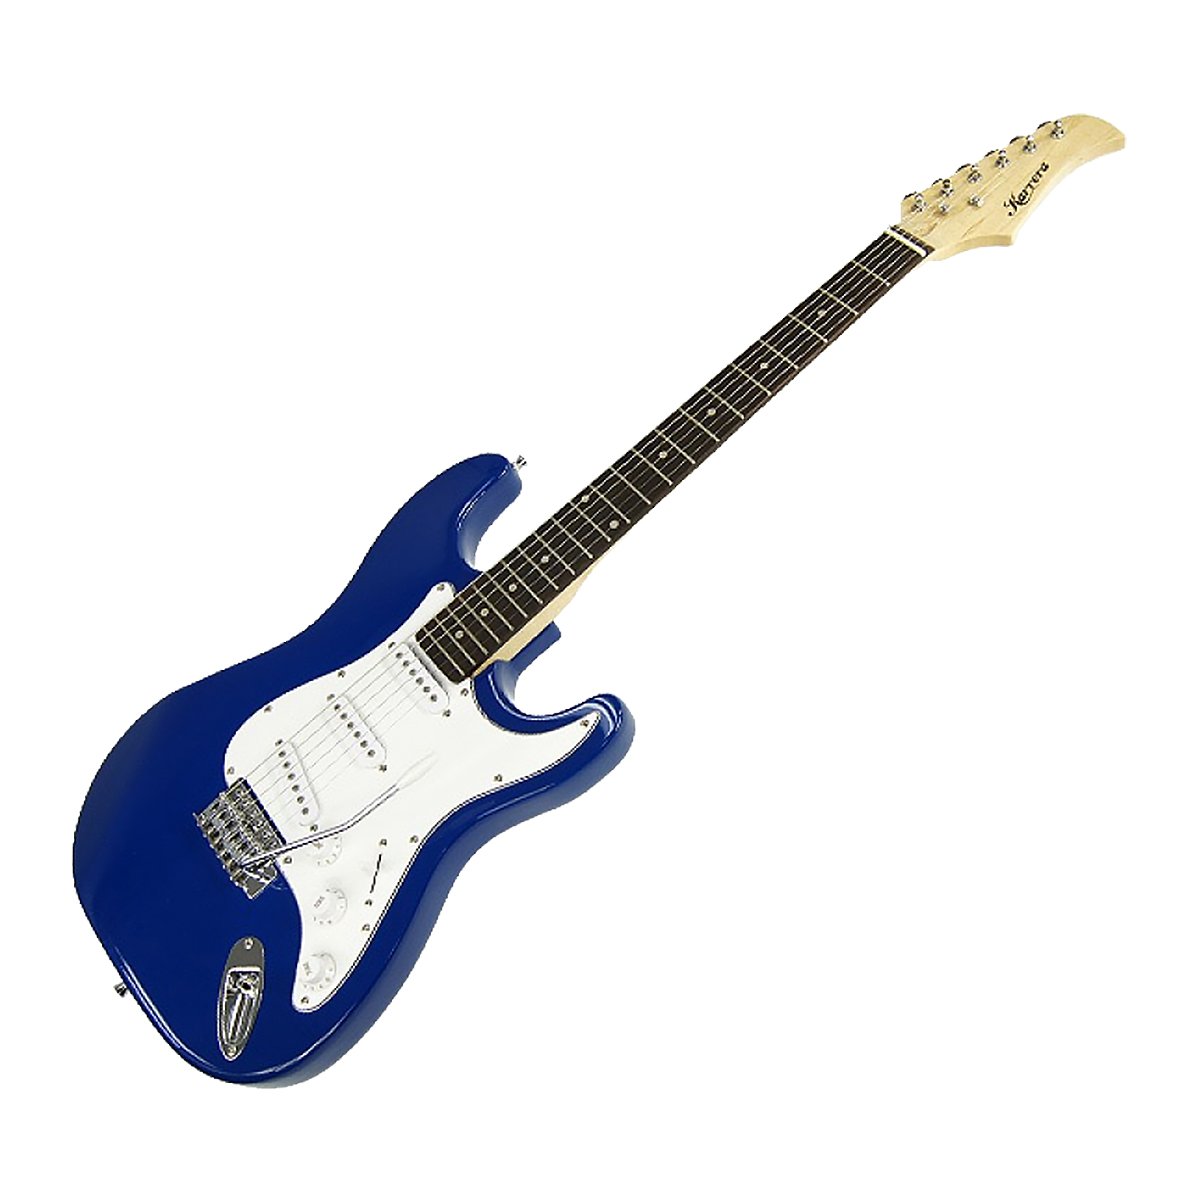 Karrera 39in Electric Guitar - Blue 1